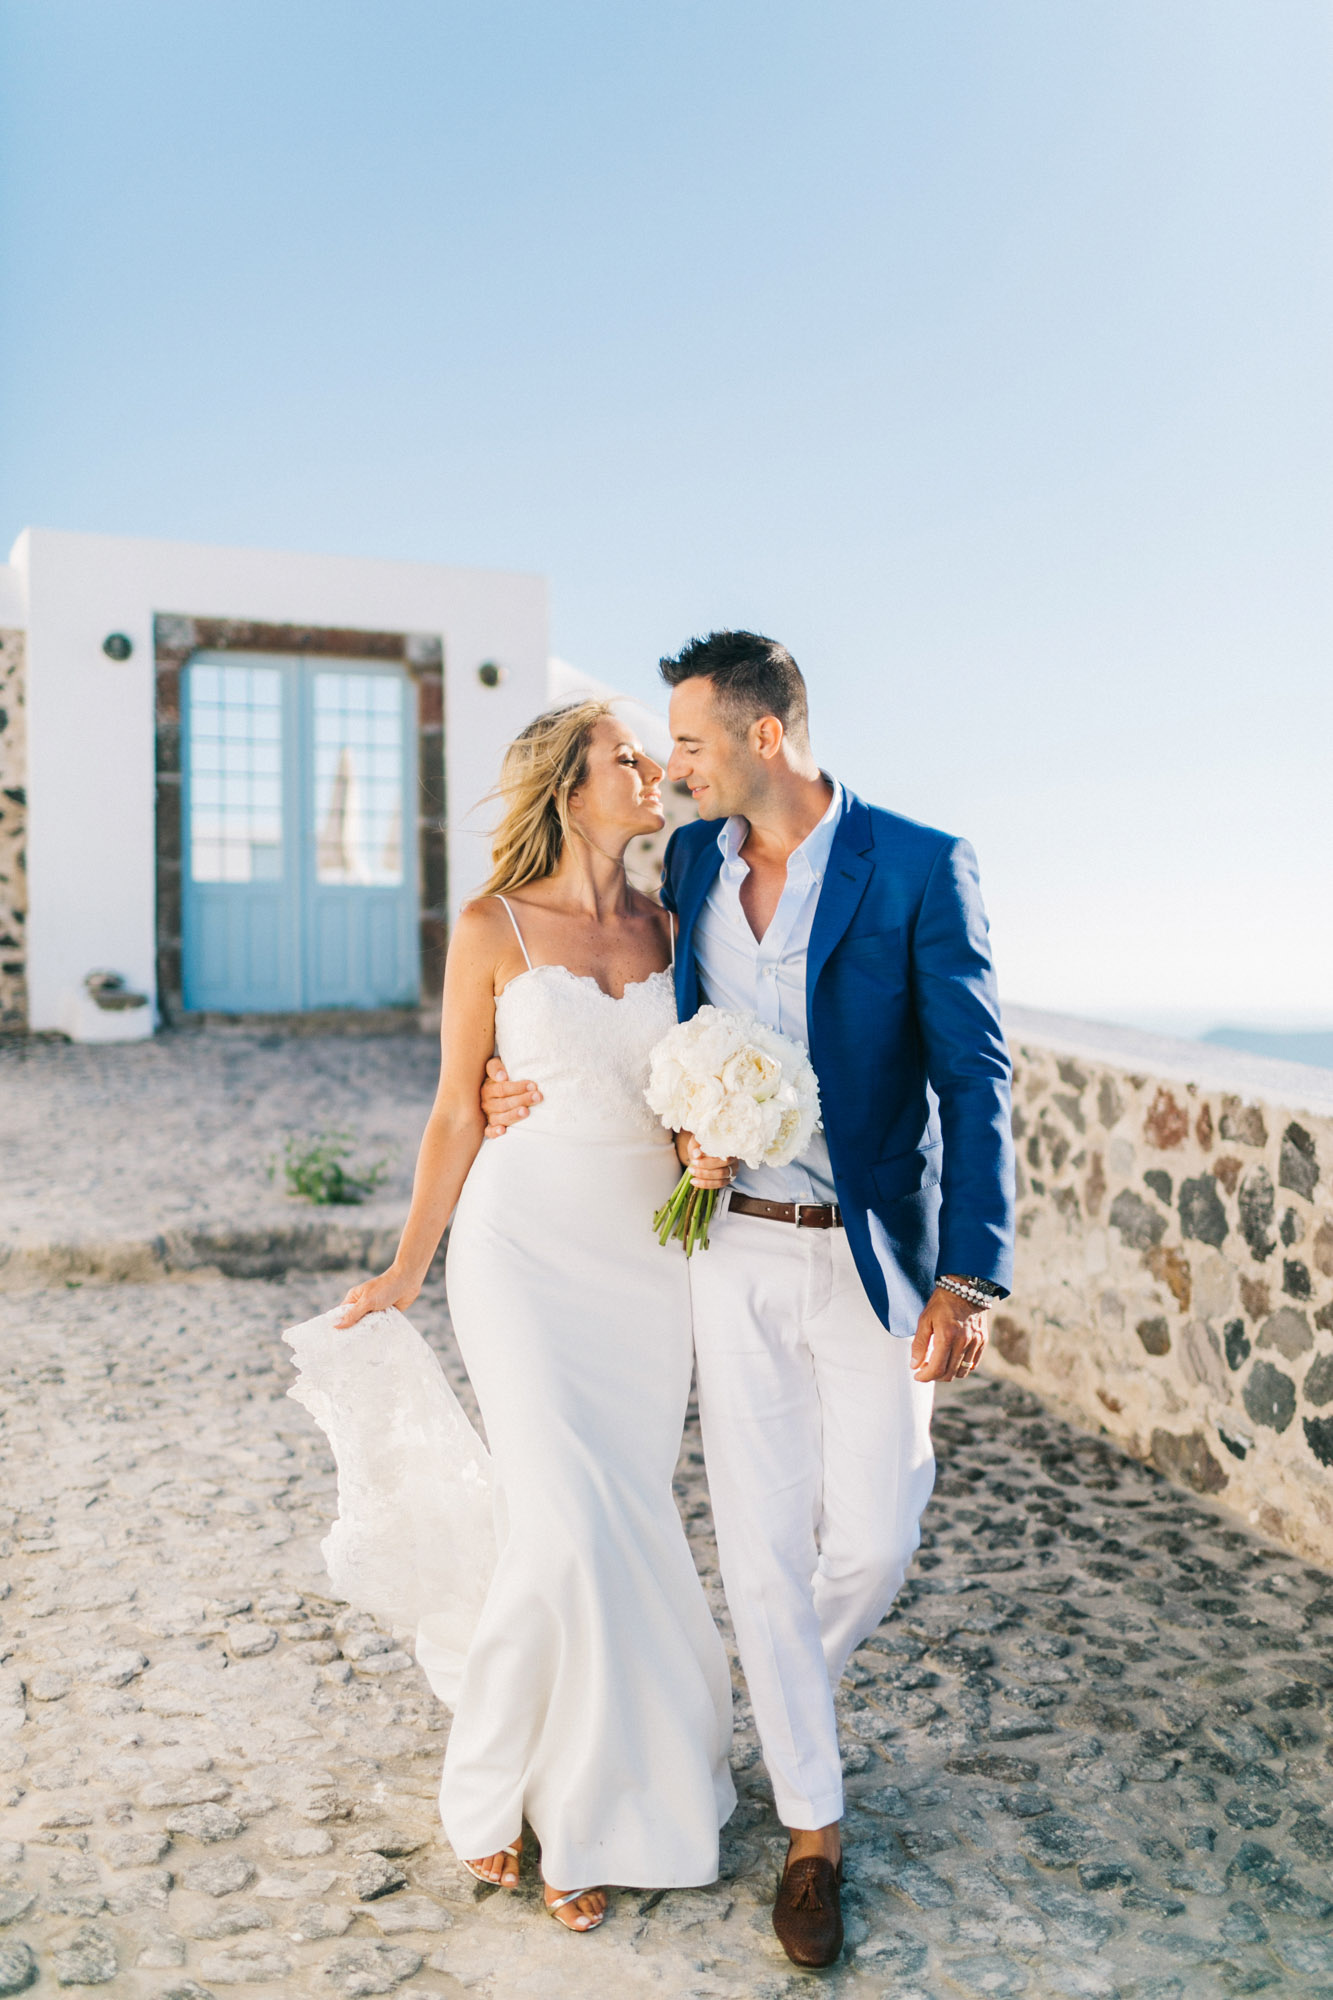 Wedding couple in Santorini, Greece.